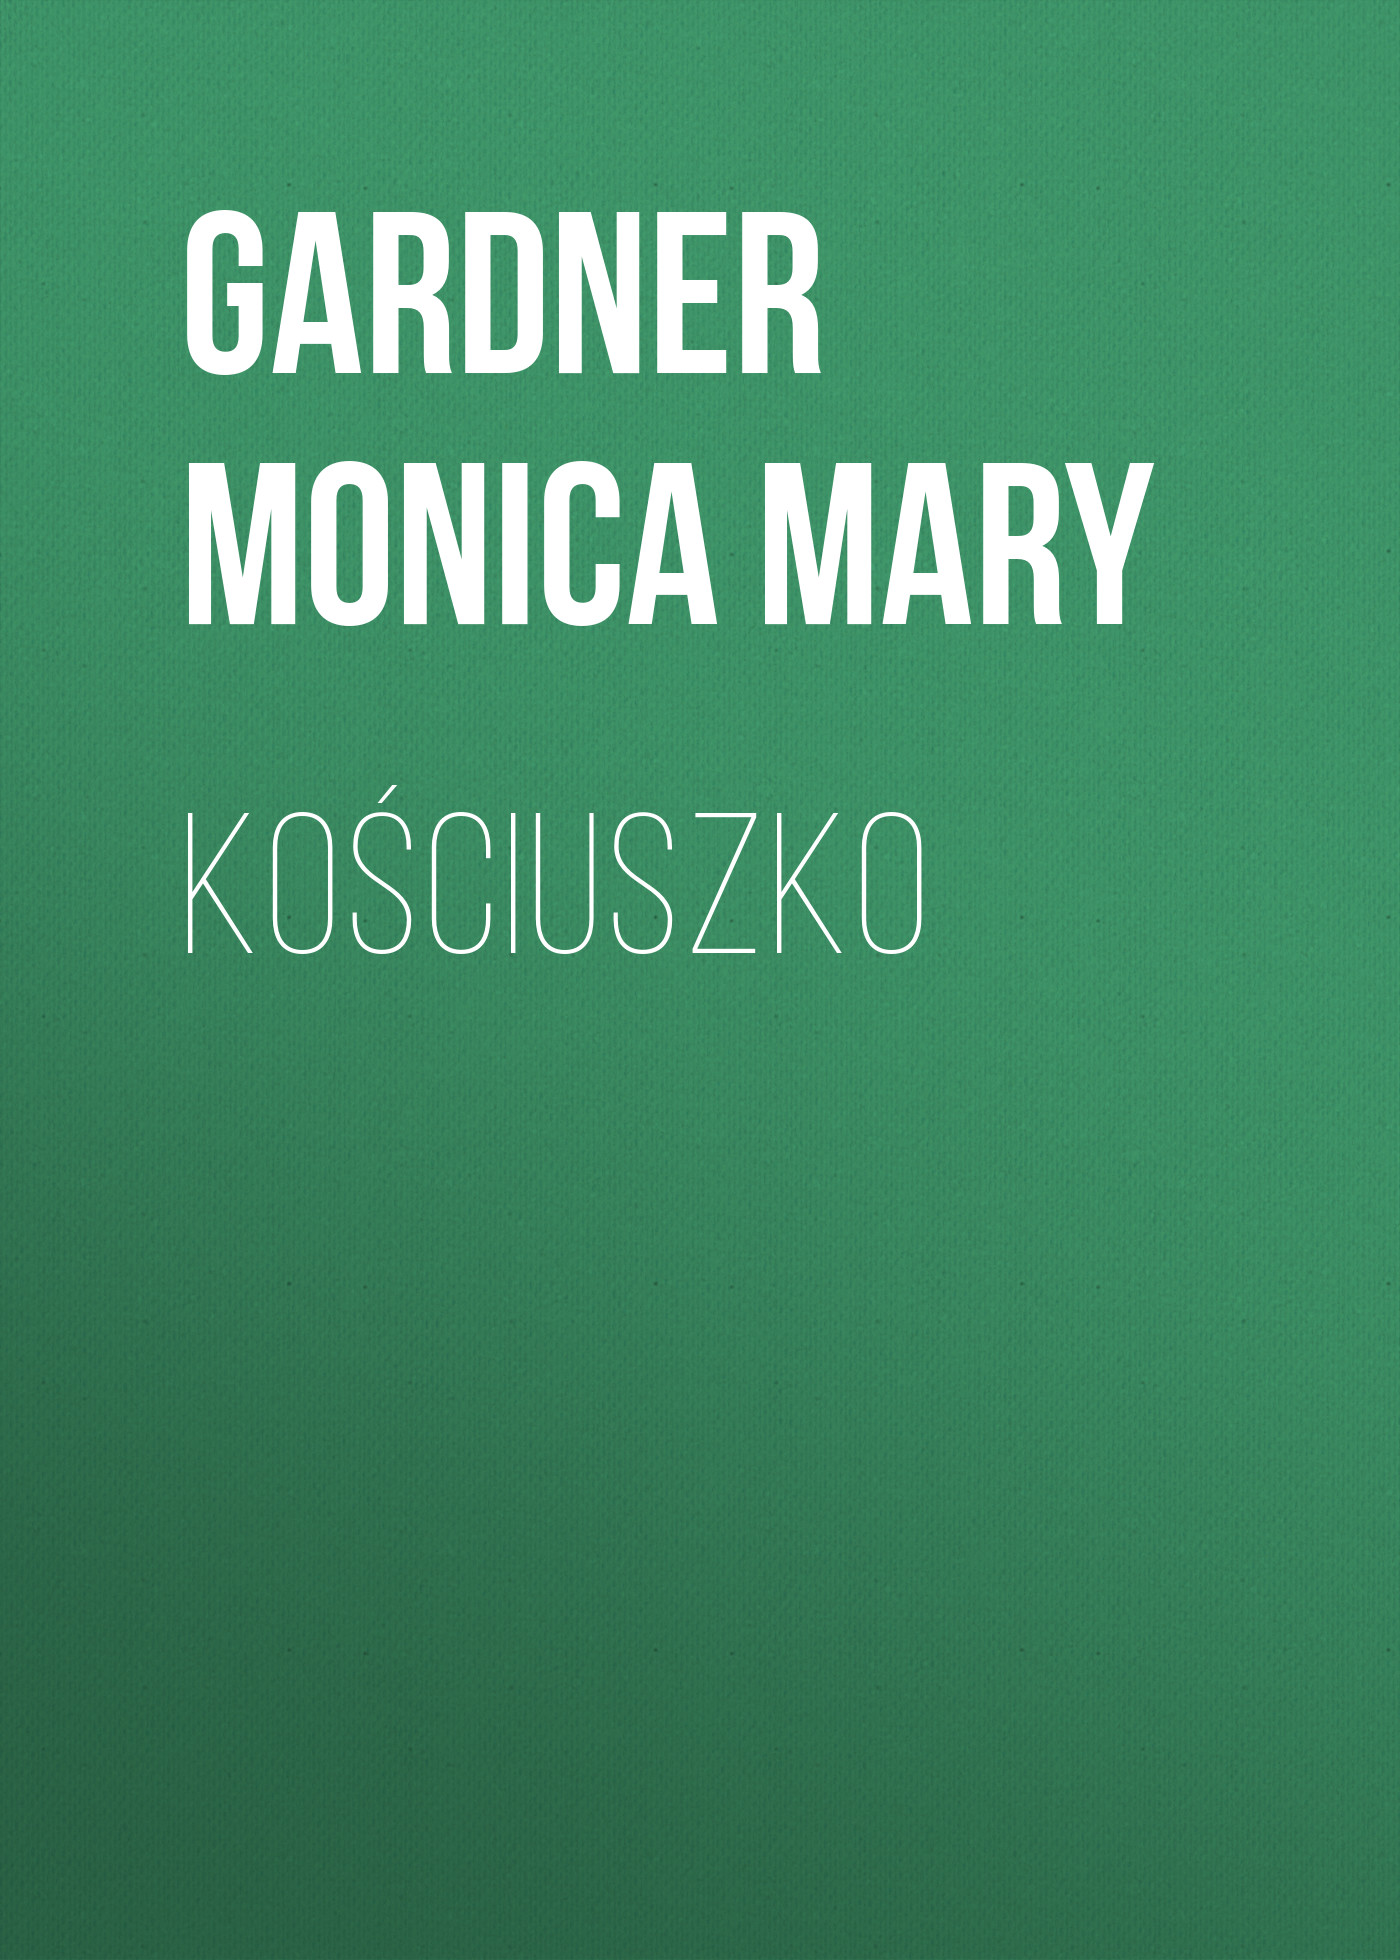 Книга Kościuszko из серии , созданная Monica Gardner, может относится к жанру Зарубежная старинная литература, Зарубежная классика. Стоимость электронной книги Kościuszko с идентификатором 24859563 составляет 0 руб.